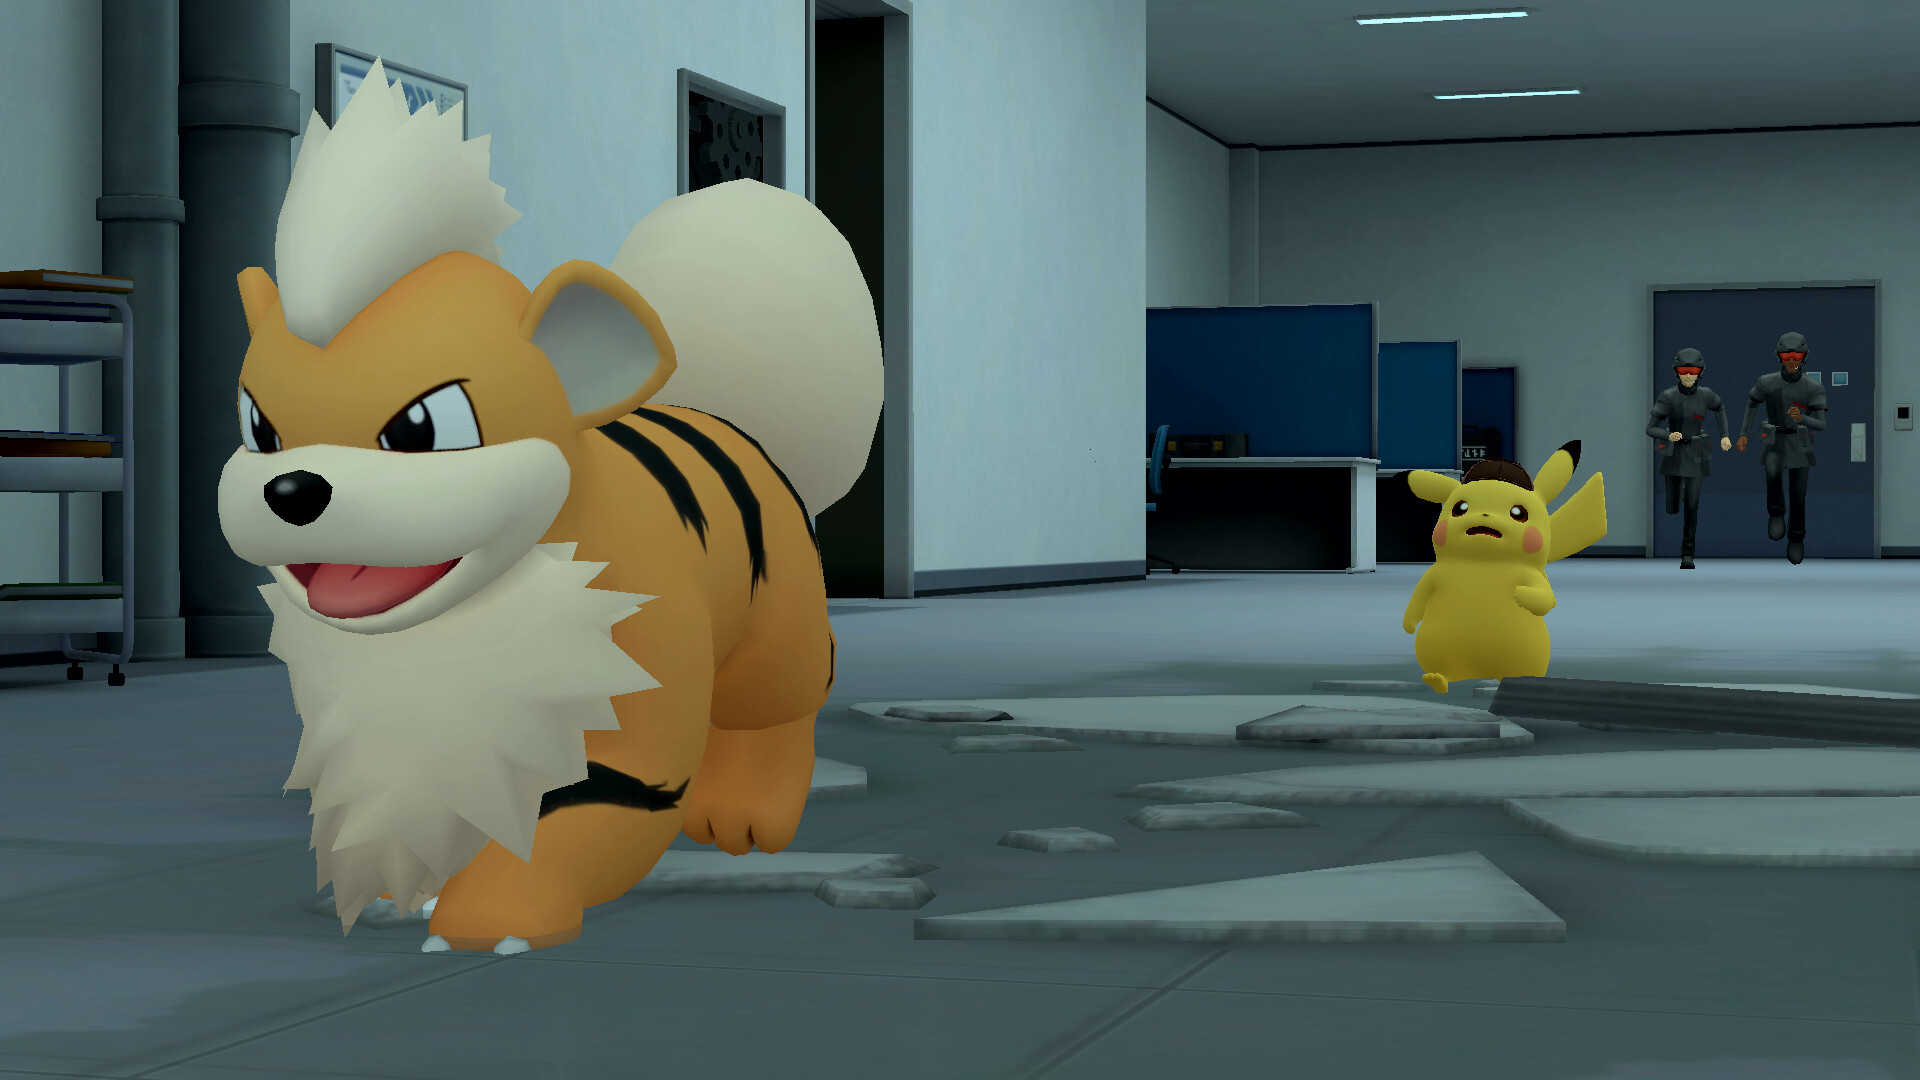 Screenshot zur Bisafans-Komplettlösung für Meisterdetektiv Pikachu kehrt zurück